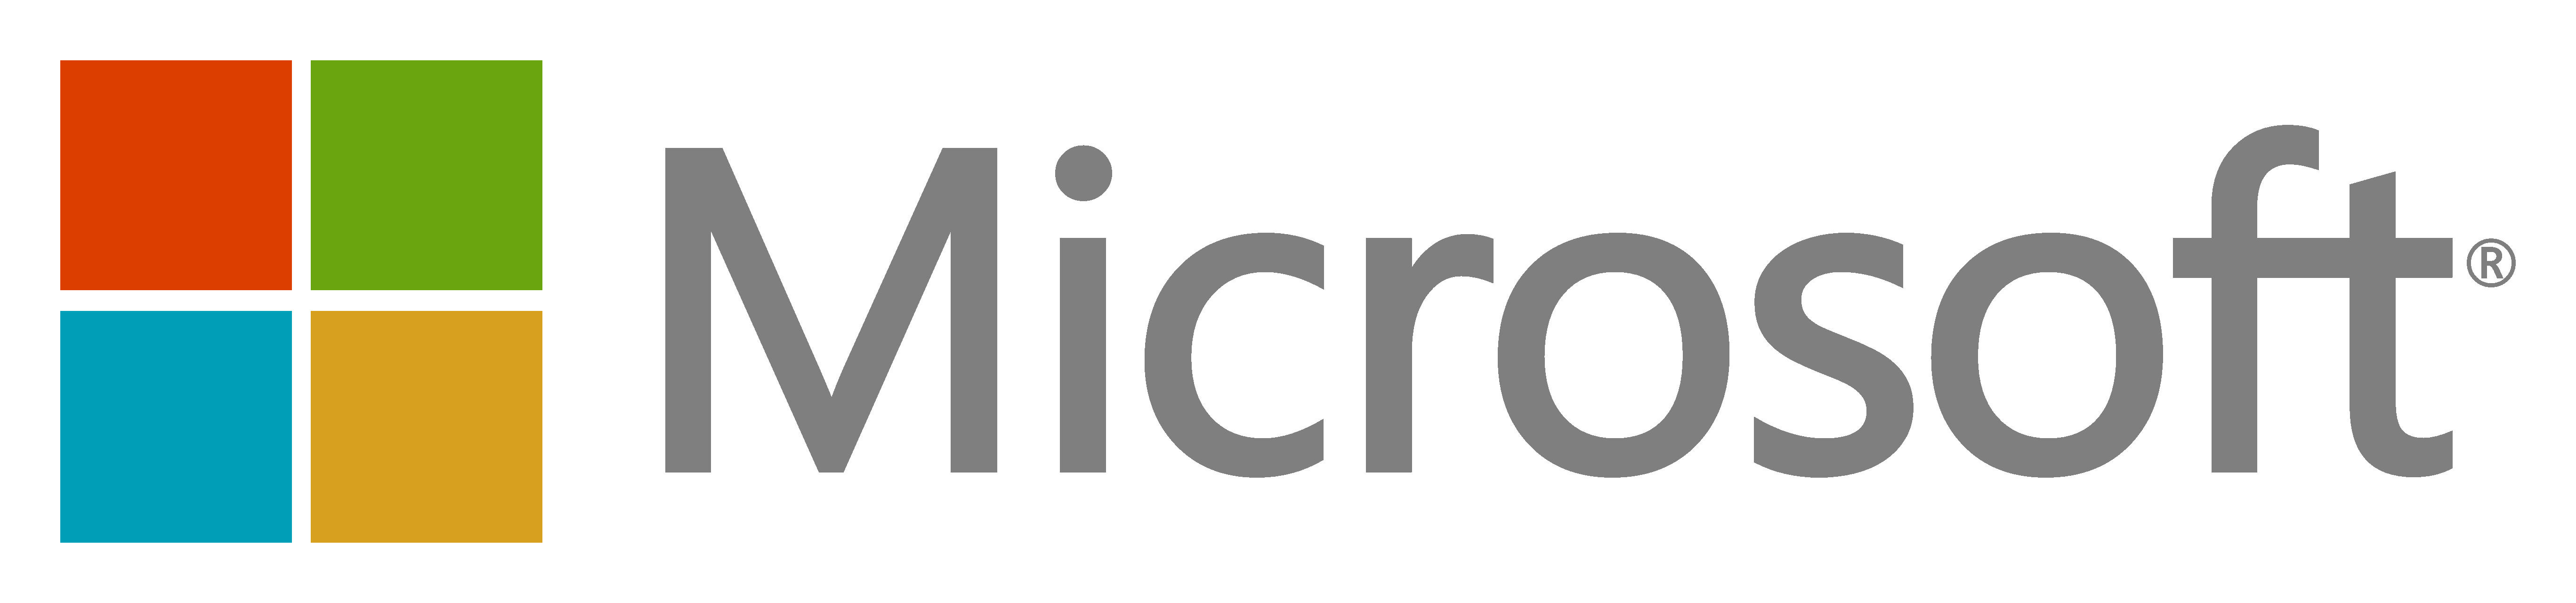 File:Microsoft logo (2012) mo